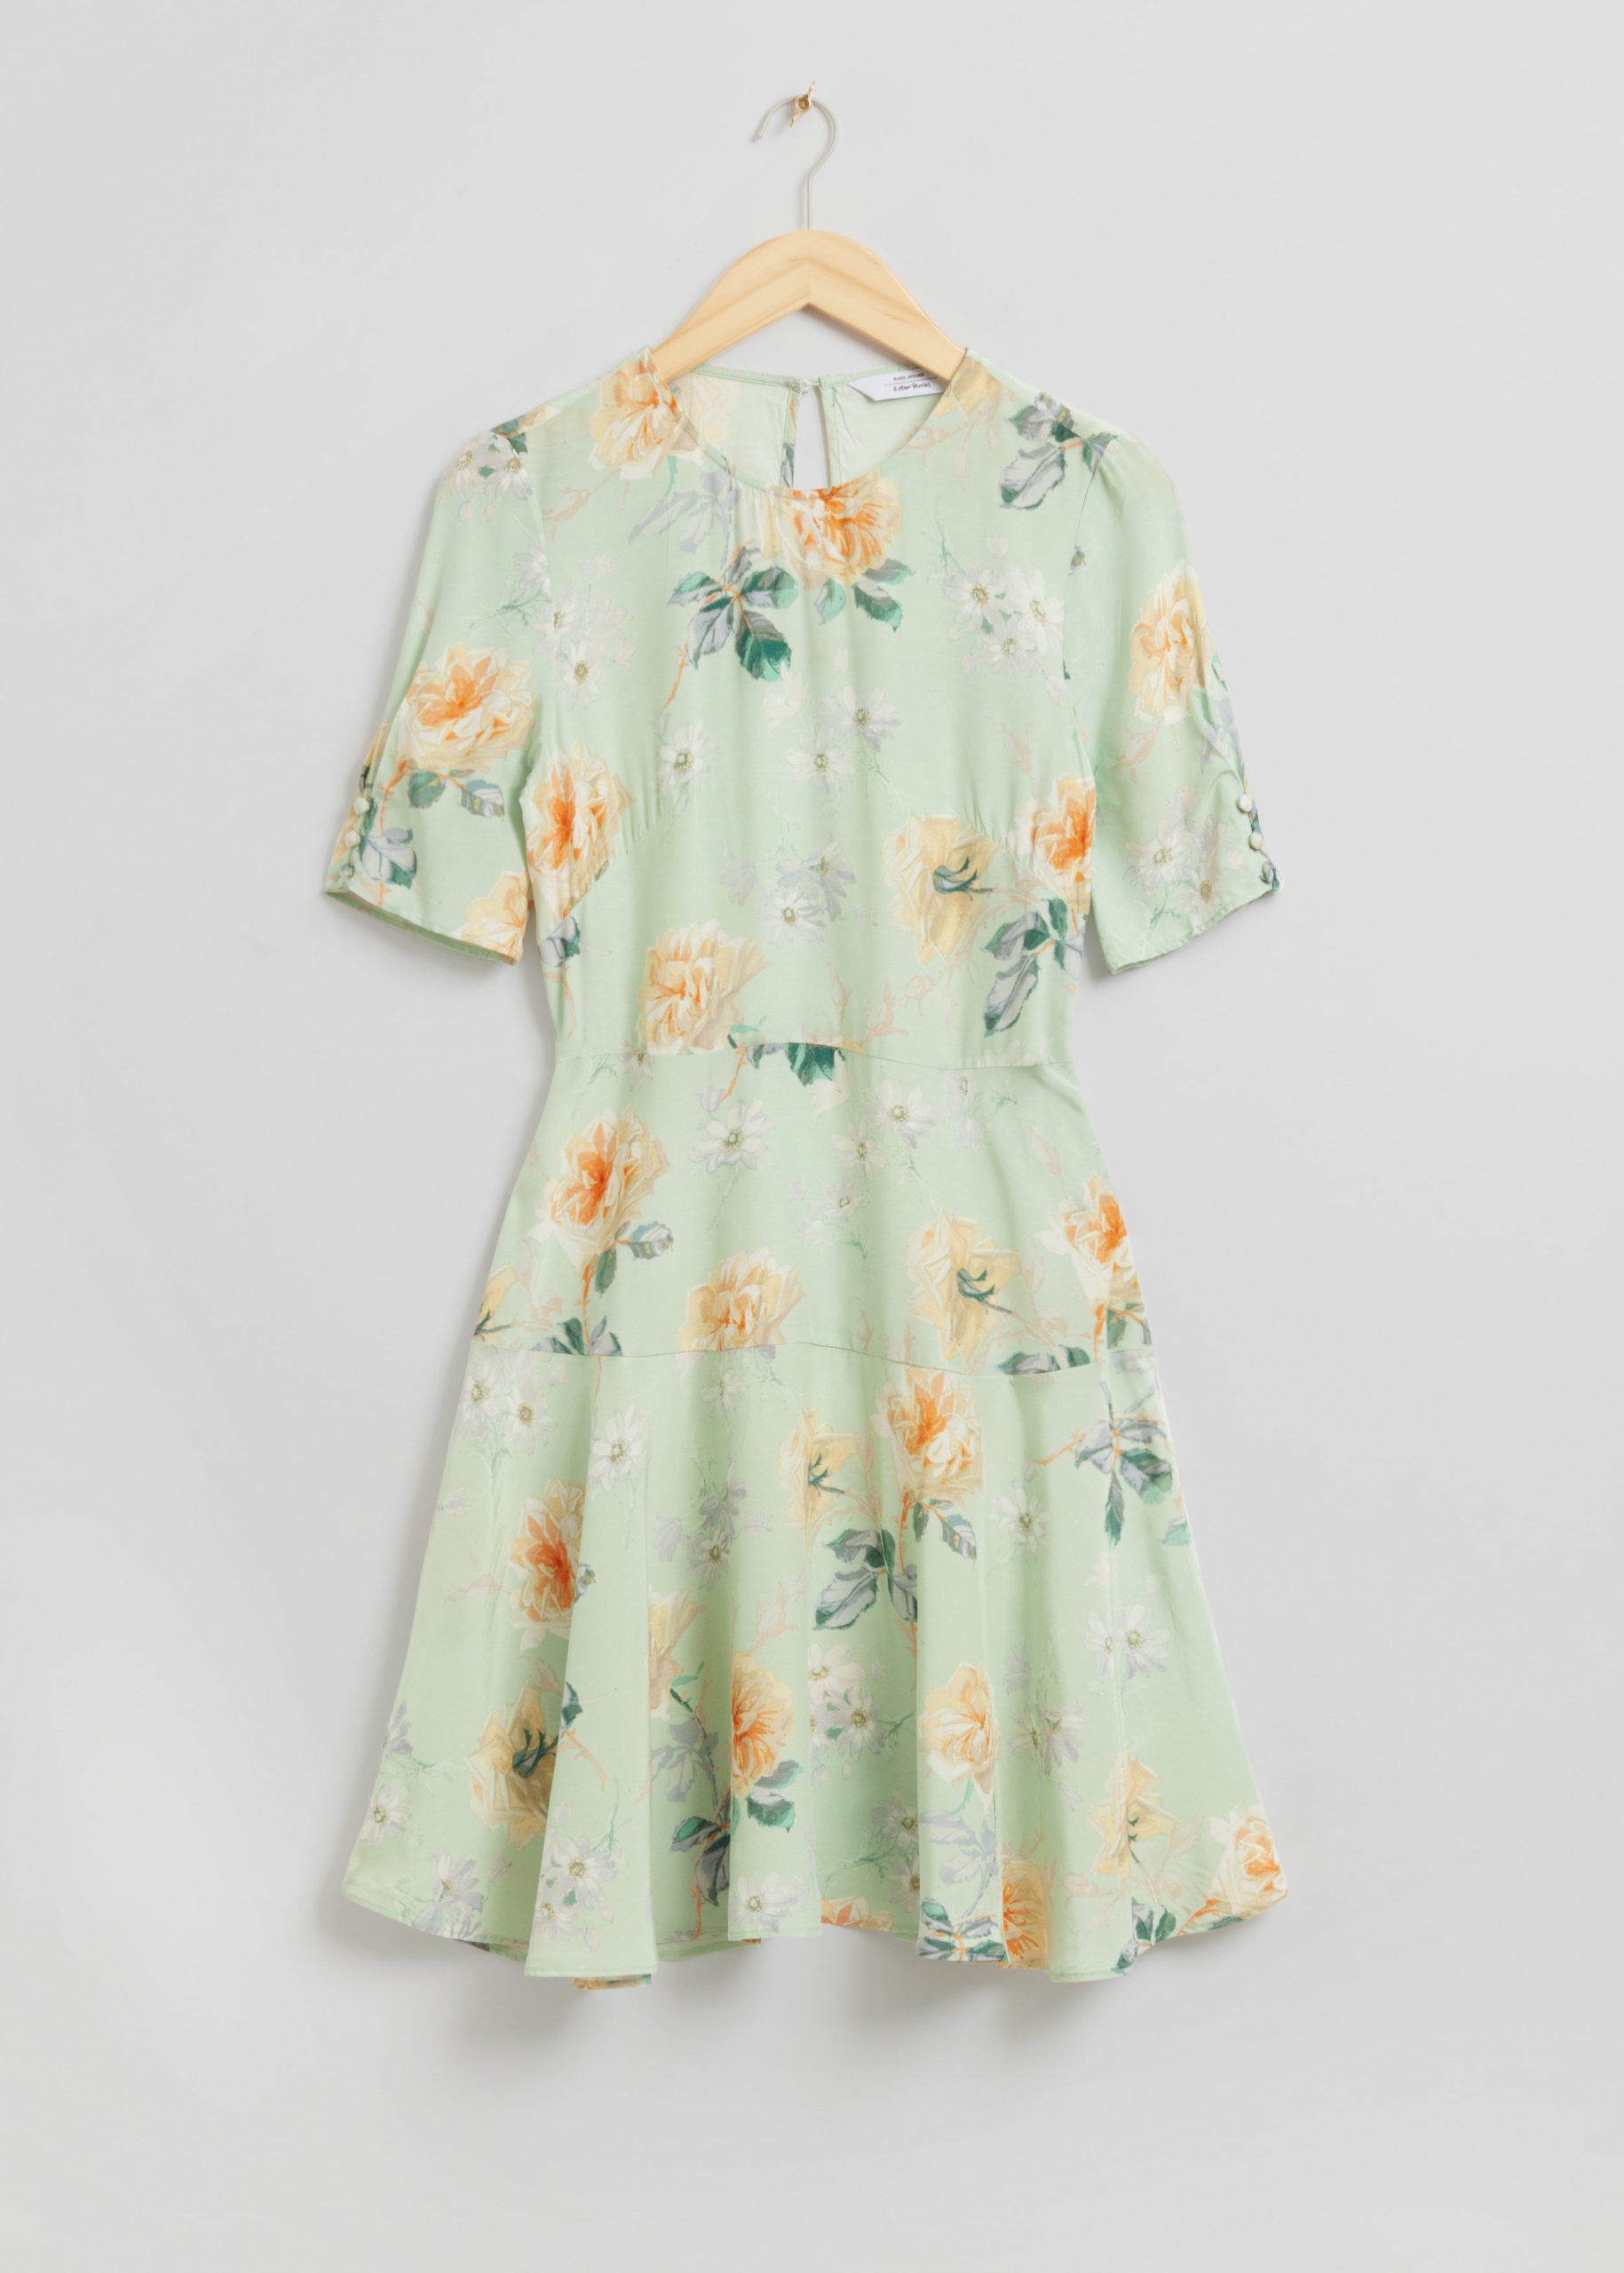 & Other Stories Bedrucktes ausgestelltes Kleid Creme/Grüner Blumendruck, Alltagskleider in Größe 36. Farbe: Cream/green floral print